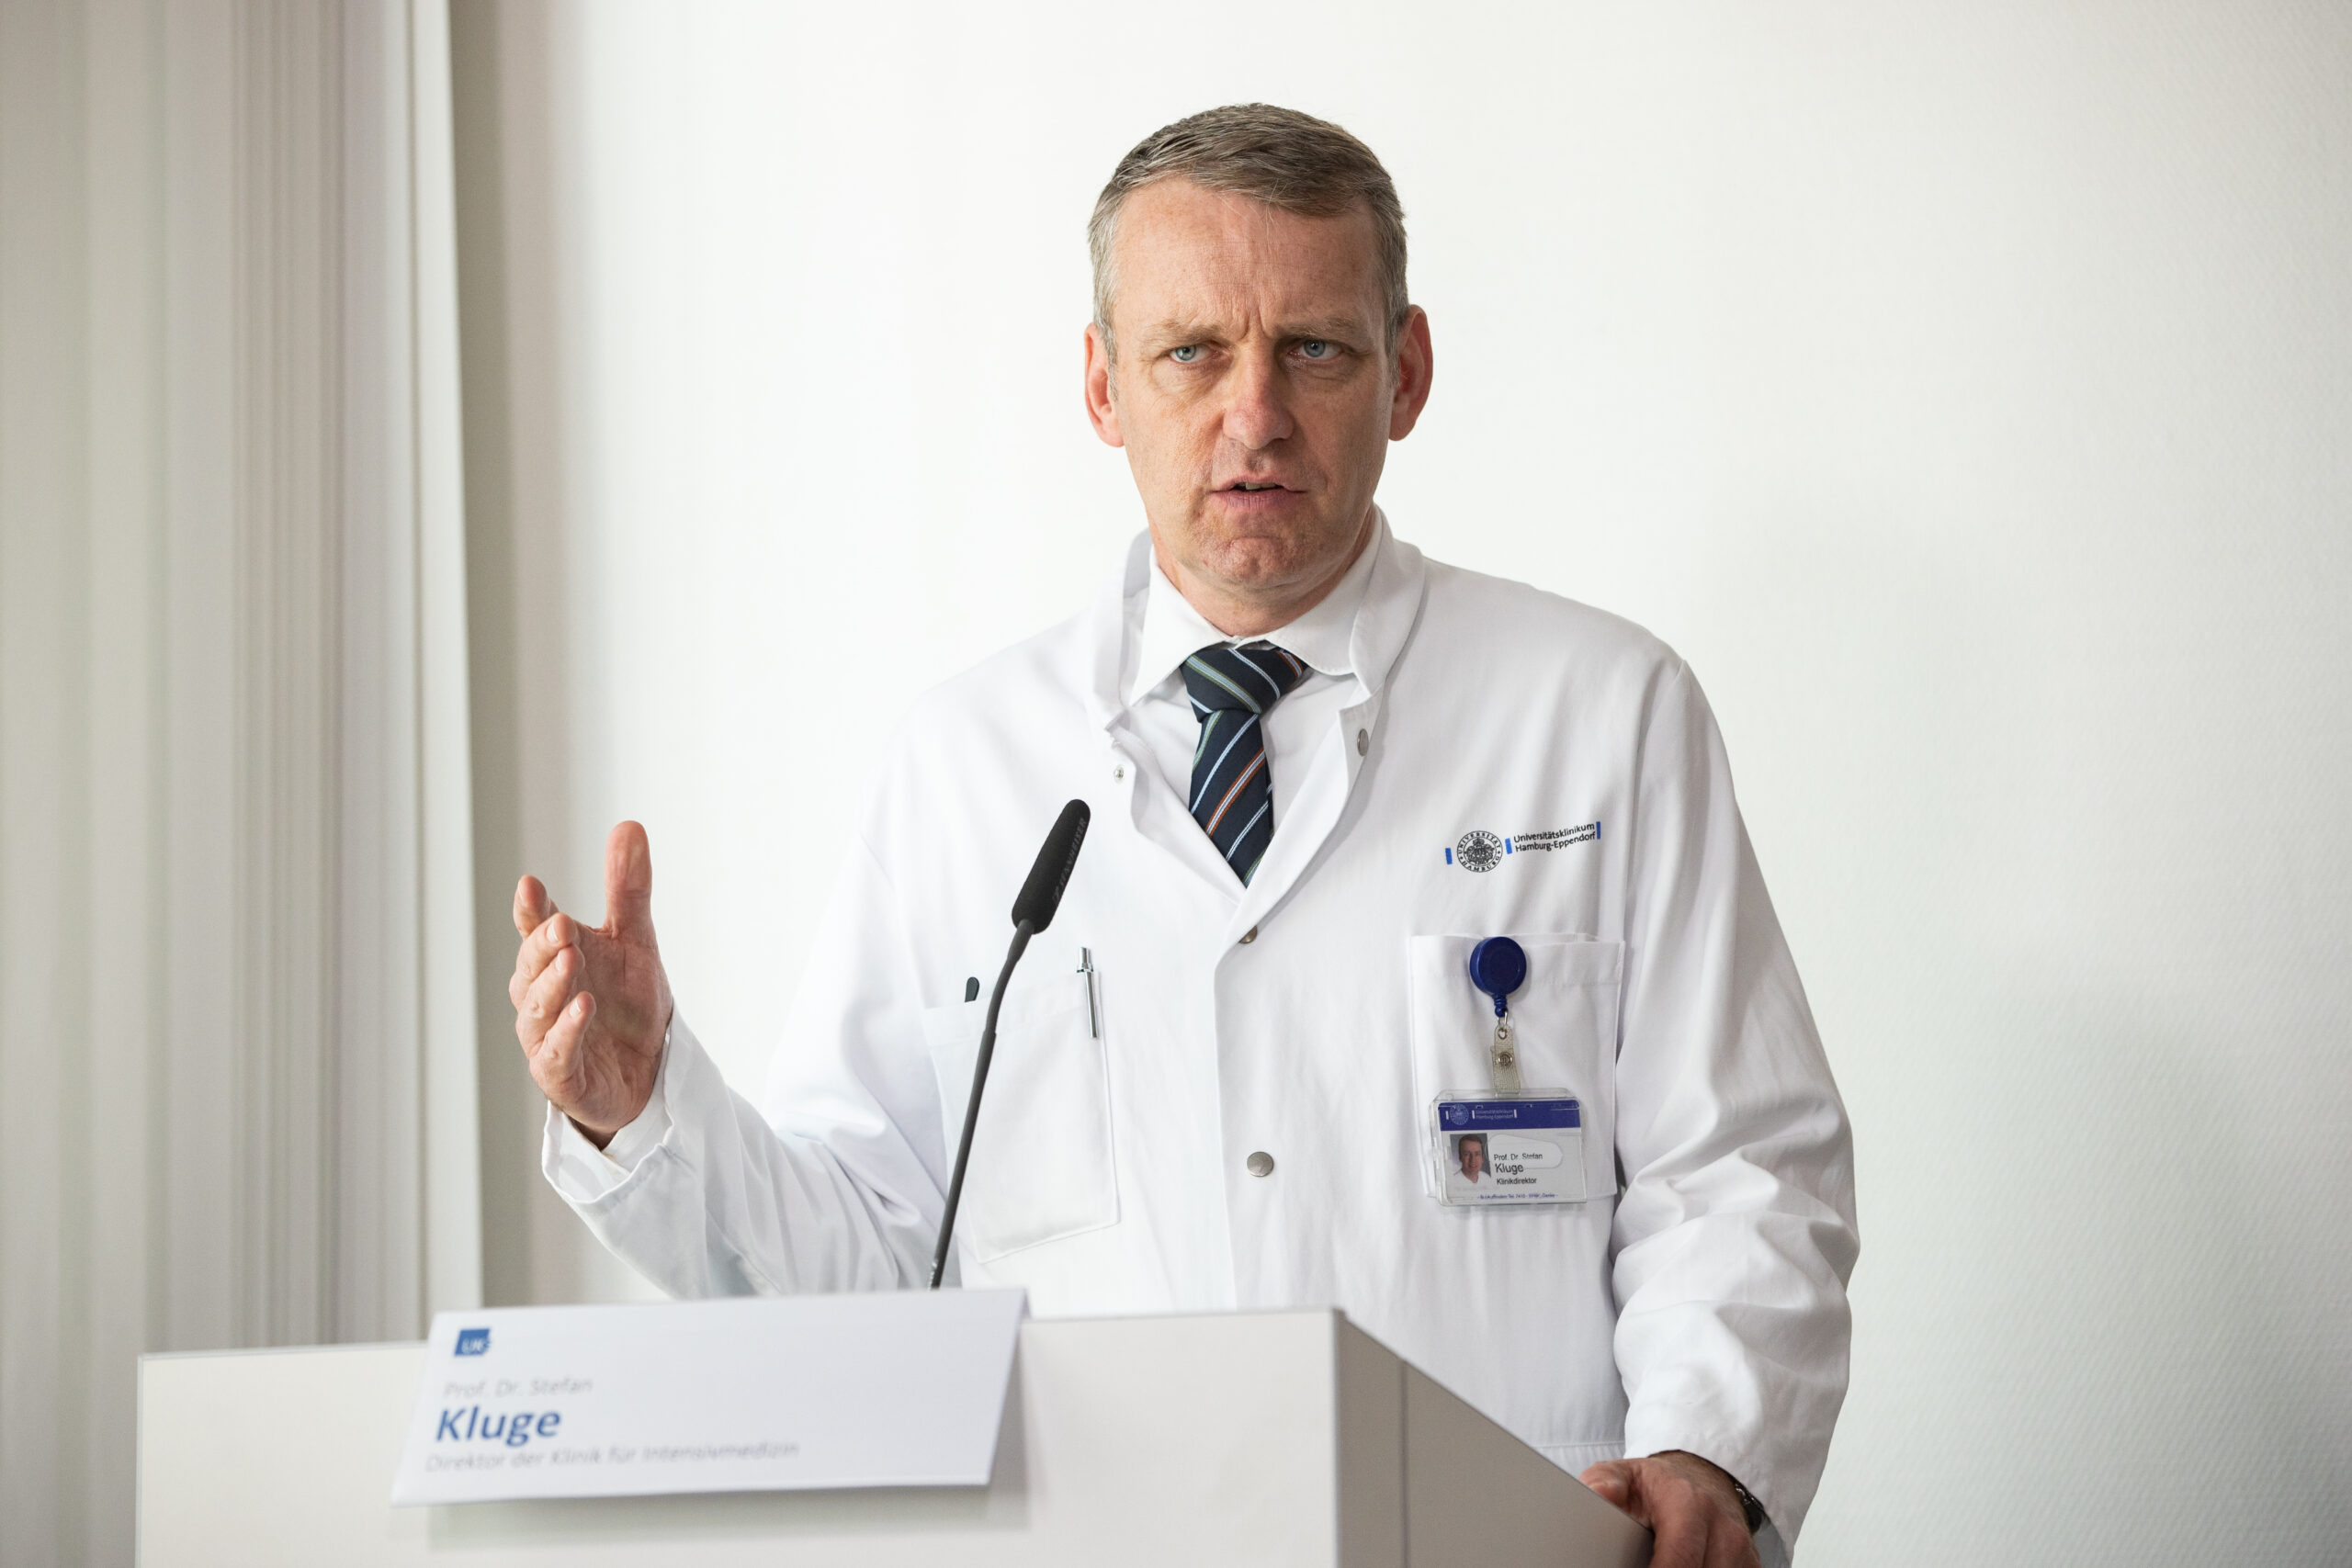 Prof. Dr. Stefan Kluge ist Direktor der Klinik für Intensivmedizin am UKE. (Archivbild)